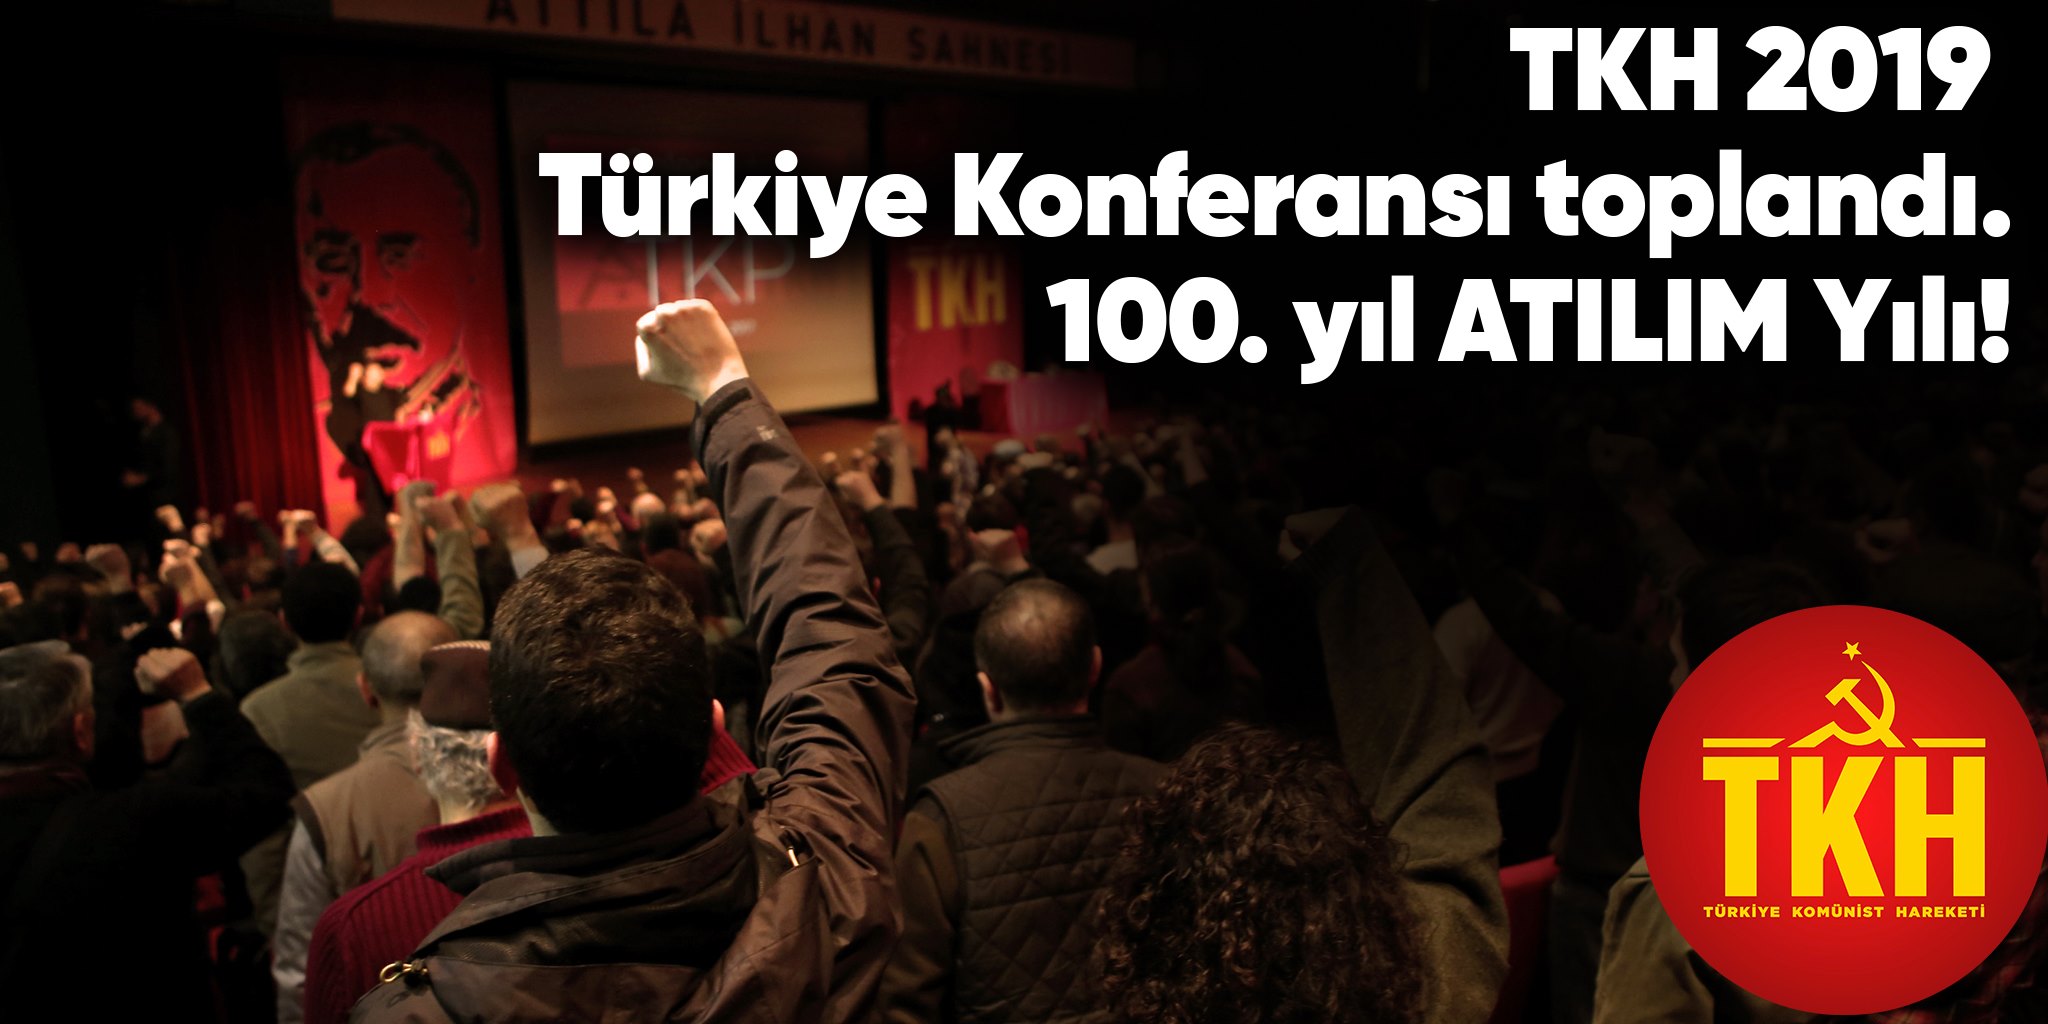 TKH 2019 Türkiye Konferansı toplandı 100.yıl Atılım Yılı!